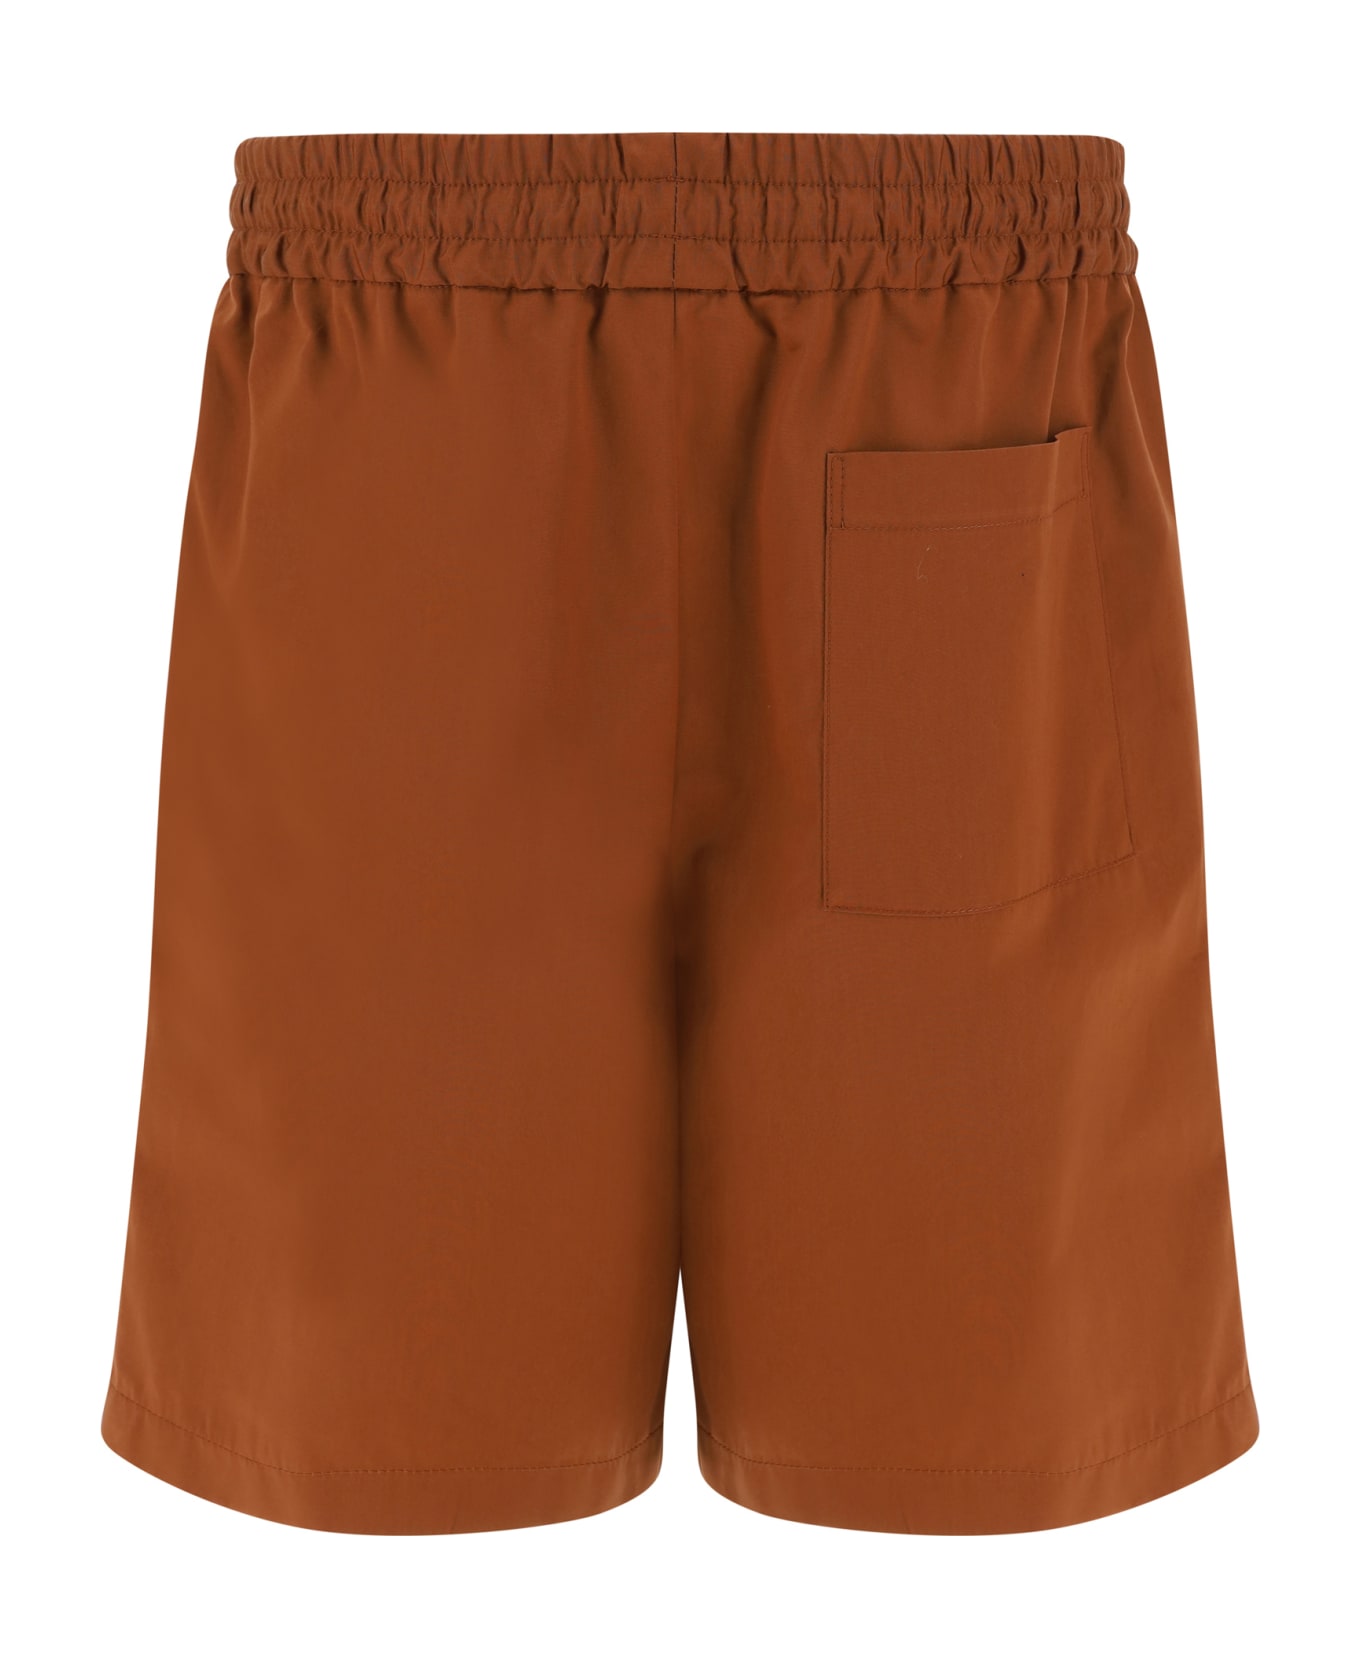 Lardini Shorts - 450